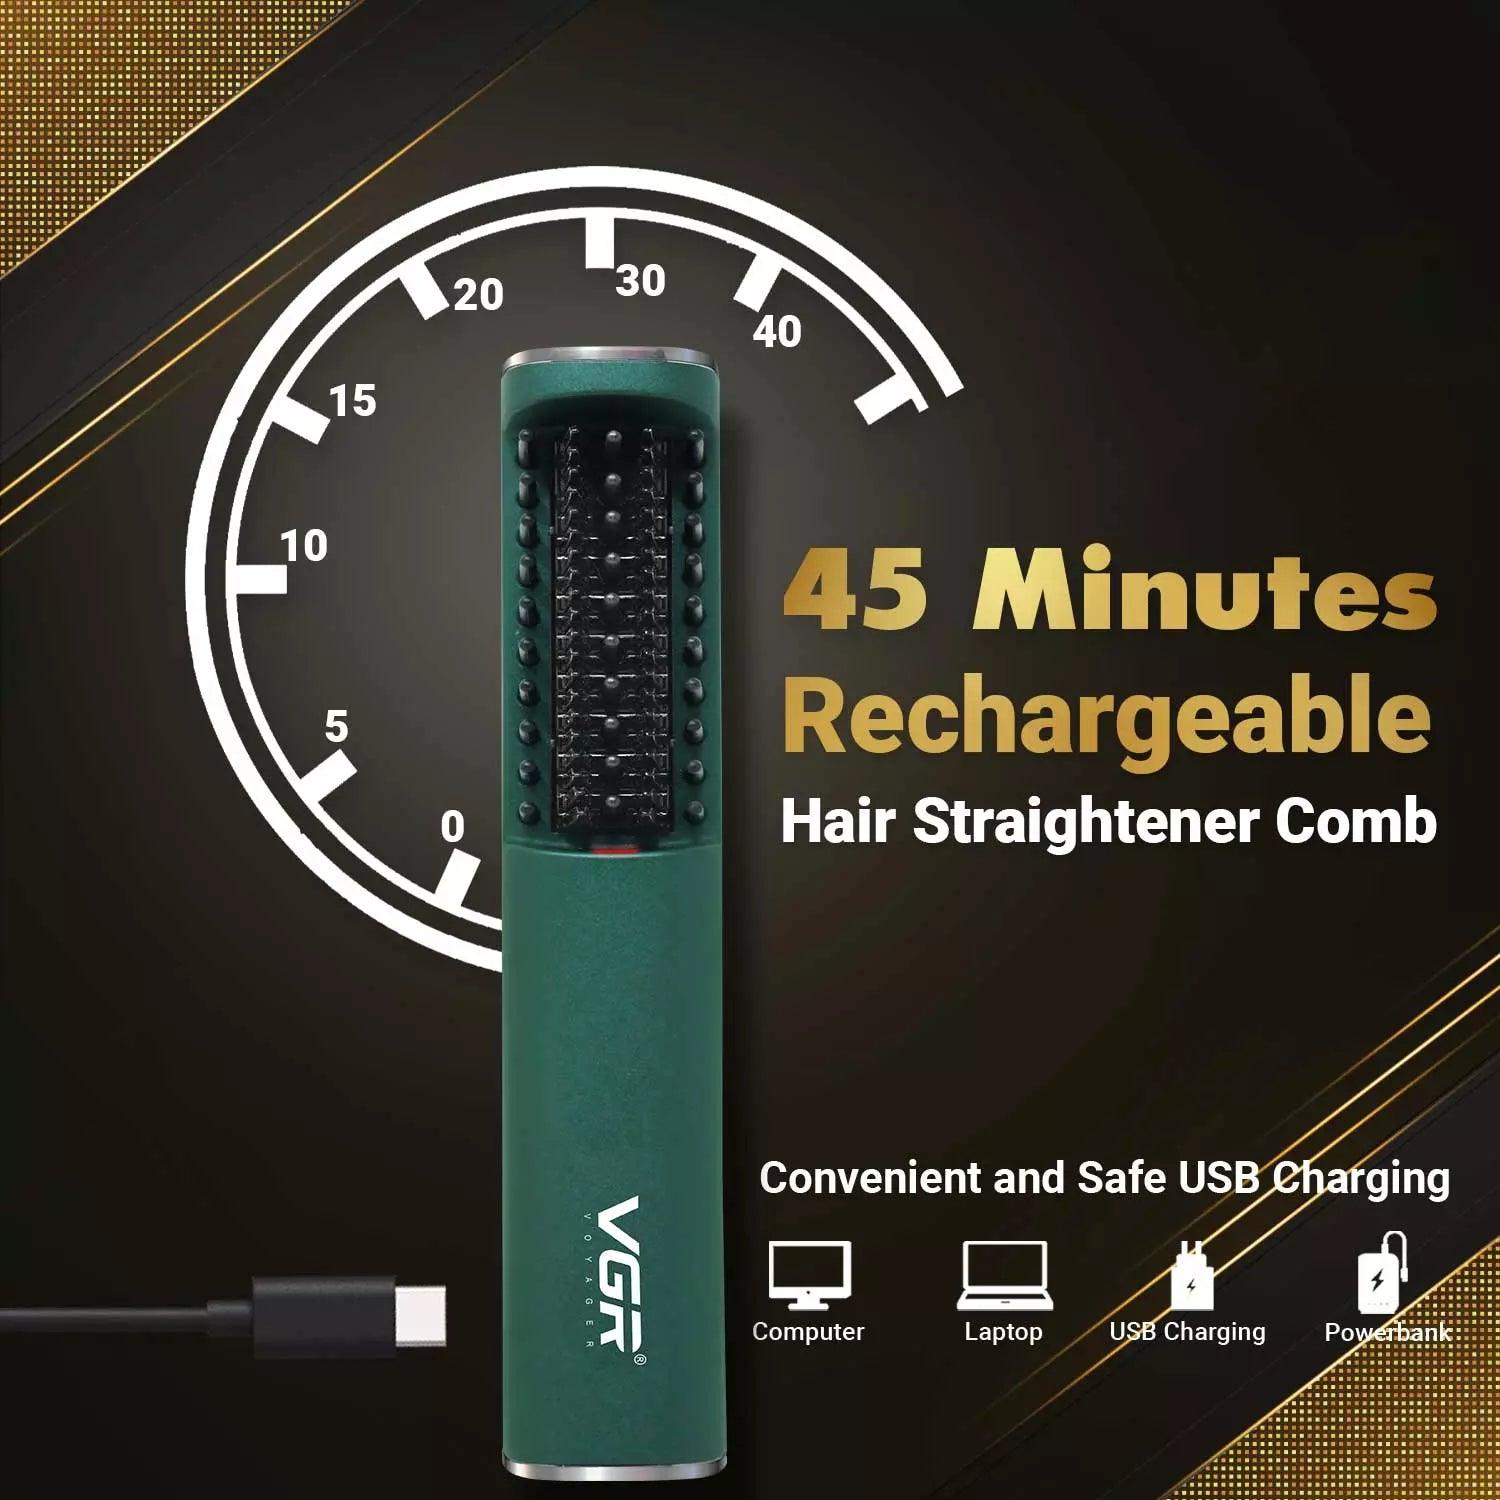 VGR V-587 Electric Hair Straightener Comb For Unisex, Green